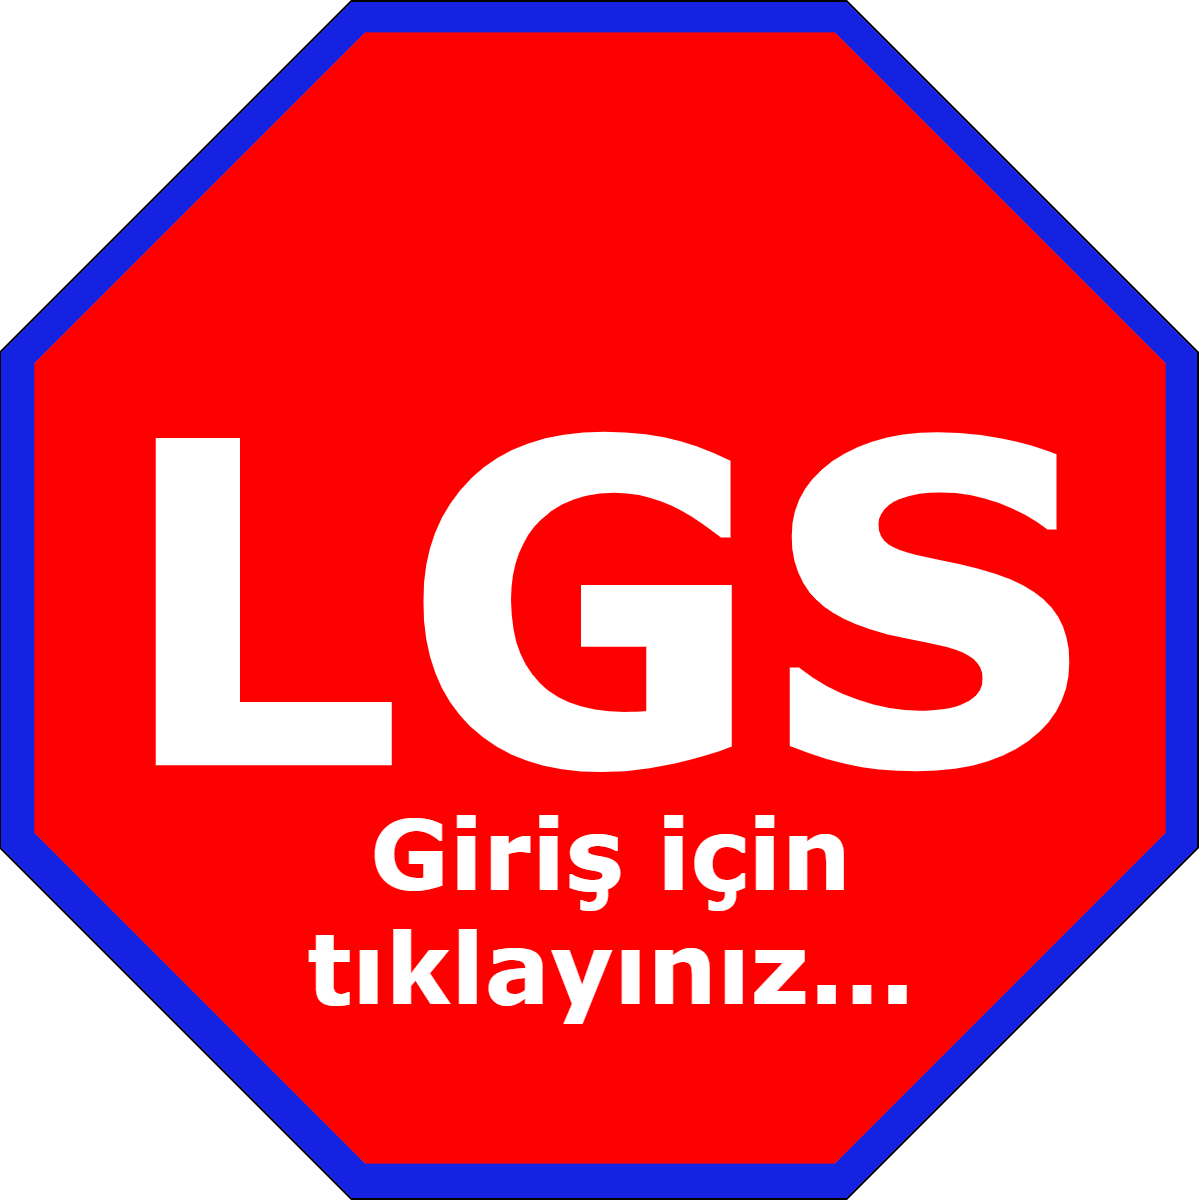 LGS